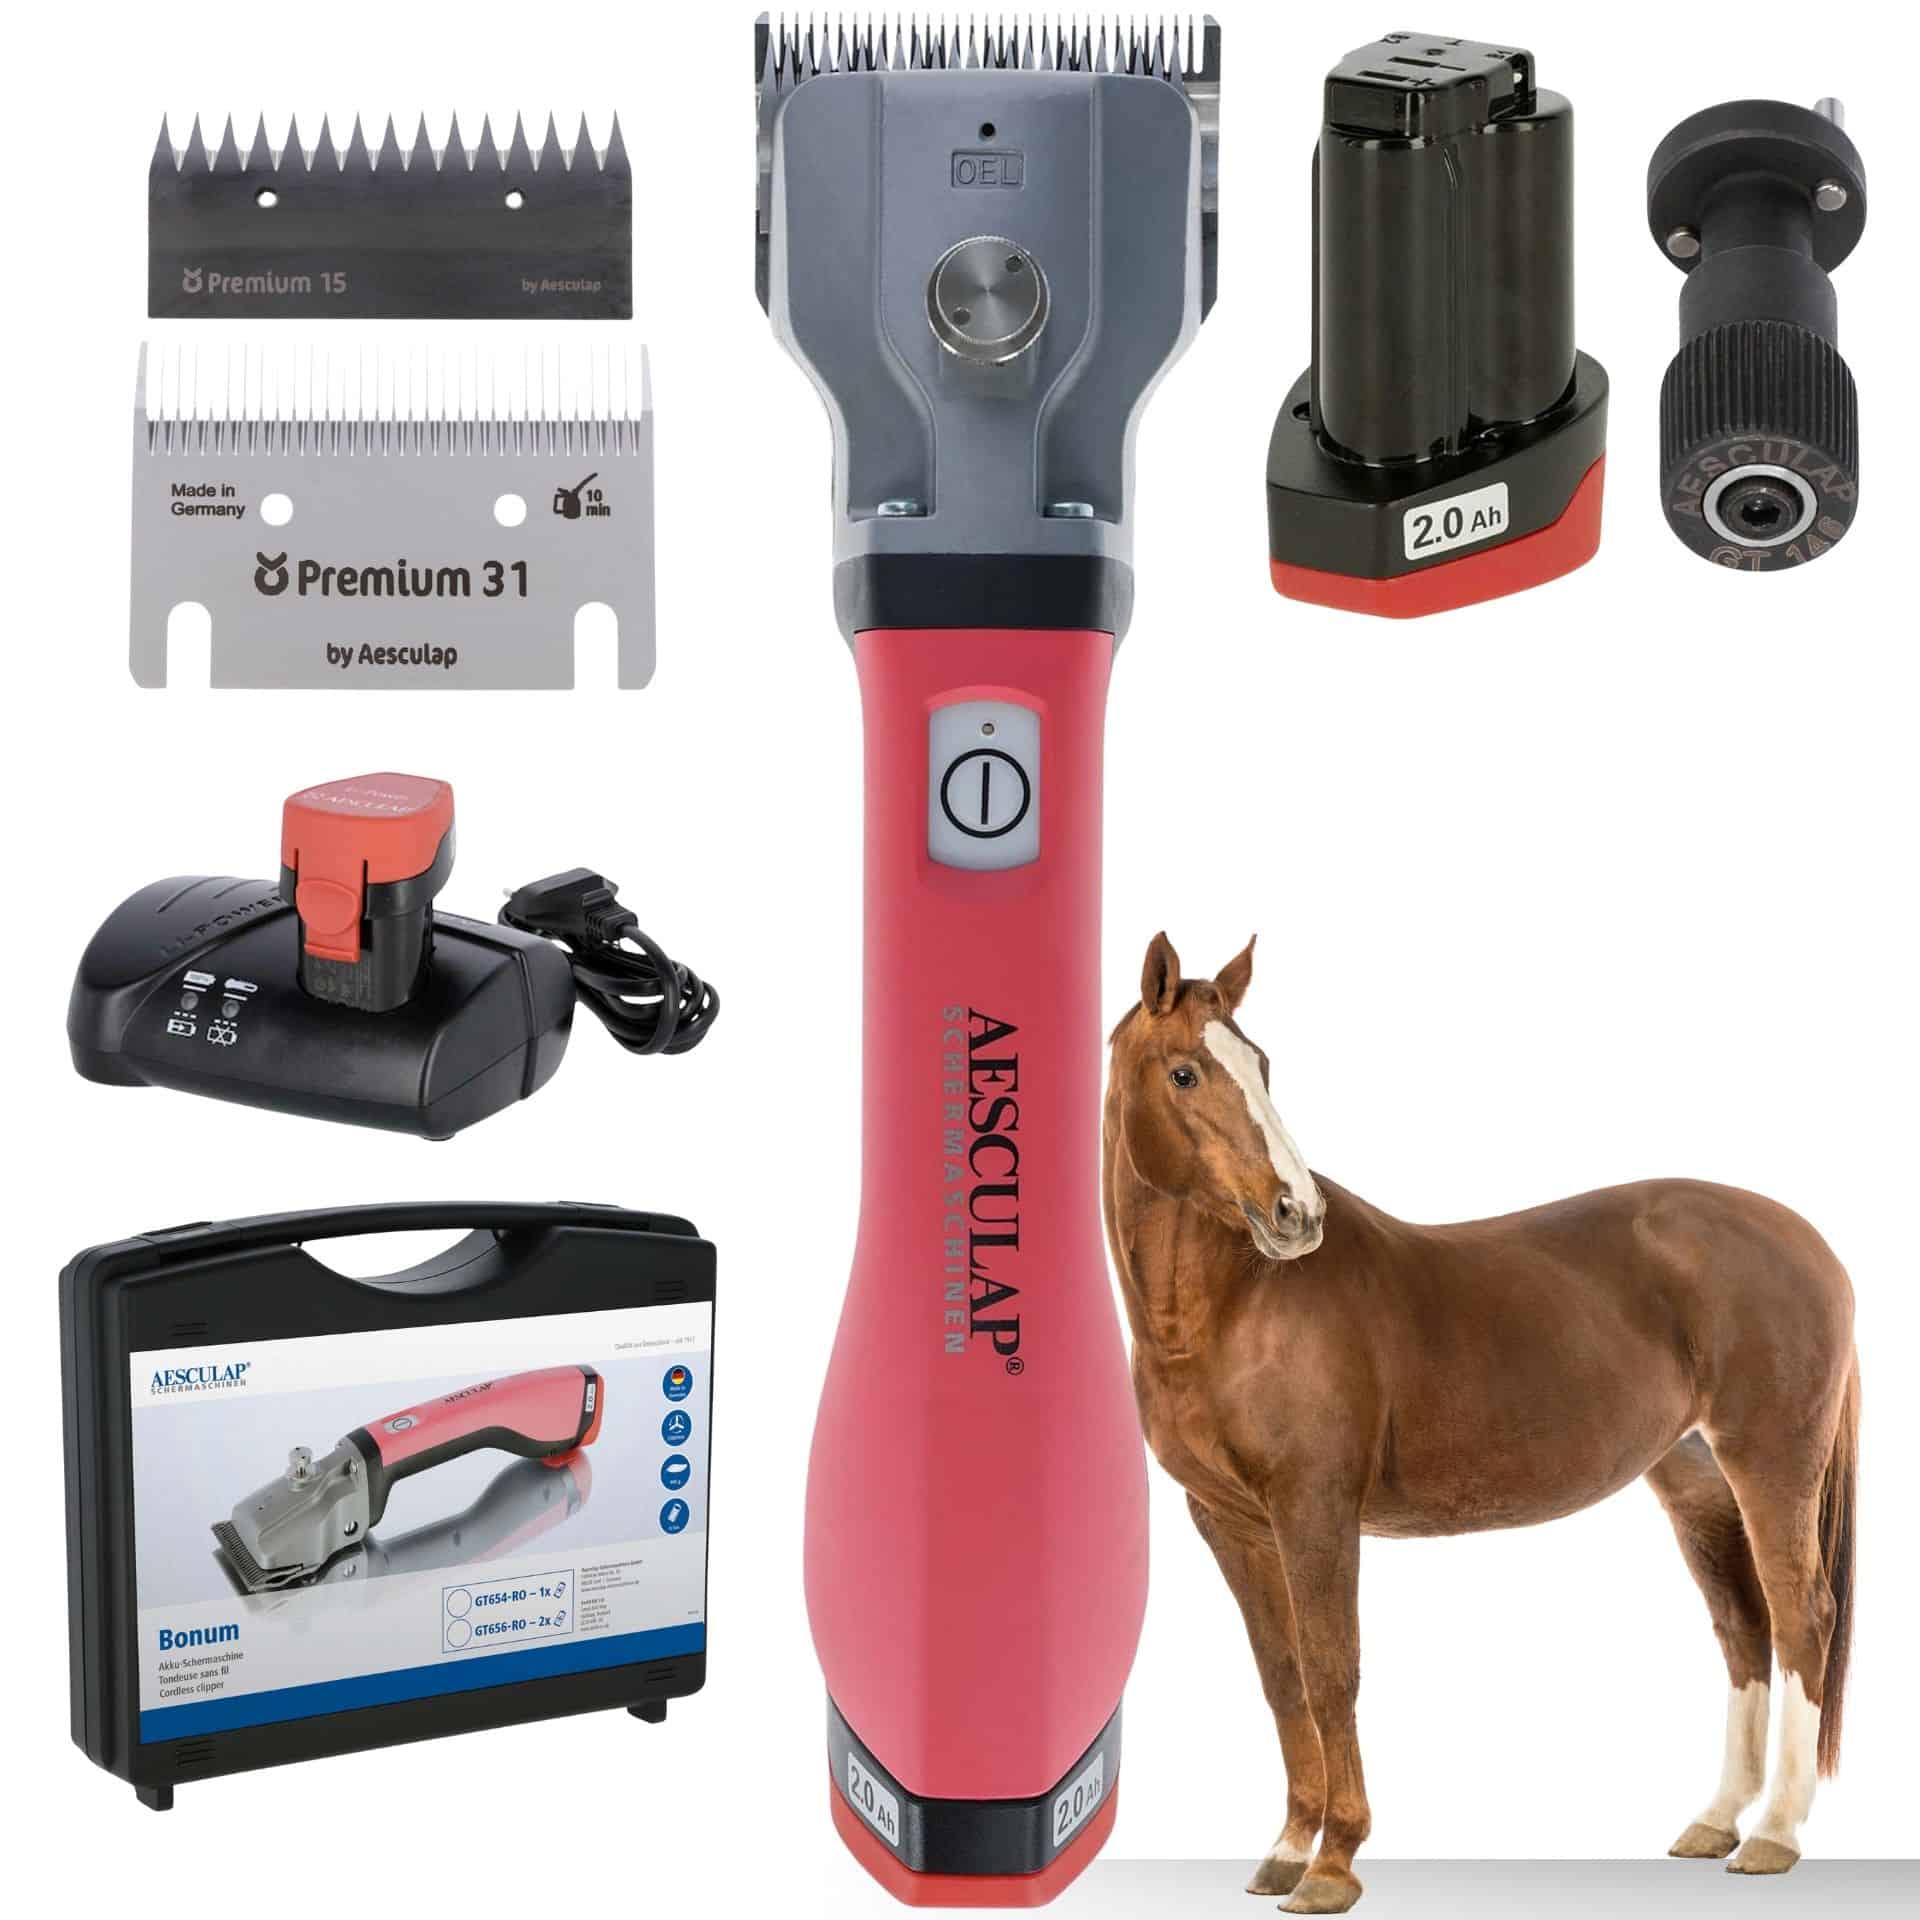 Aesculap batteri-klippmaskin hästar rosa 1x batteri + GRATIS justeringshjälpmedel 1x Batteri